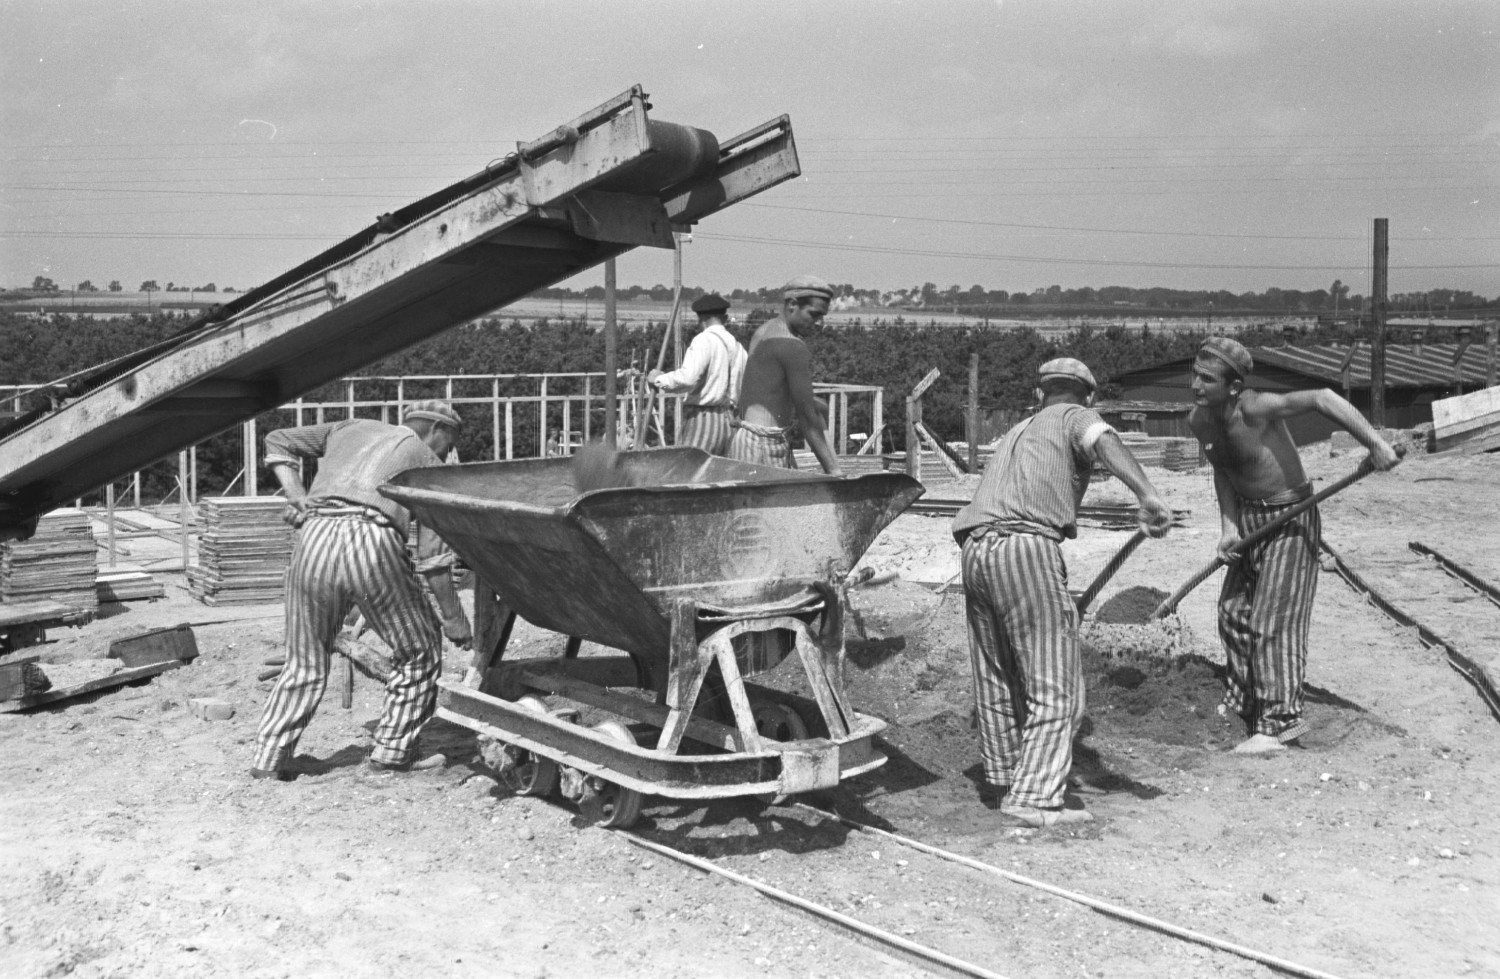 Historische Aufnahme in schwarz-weiss aus dem Jahr 1944. Fünf Männer in gestreifter Häftlingsbekleidung schippen Sand in einen auf Schienen stehenden Container. Darüber befindet sich ein Laufband. Im Hintergrund lagern weitere Baumaterialien. 